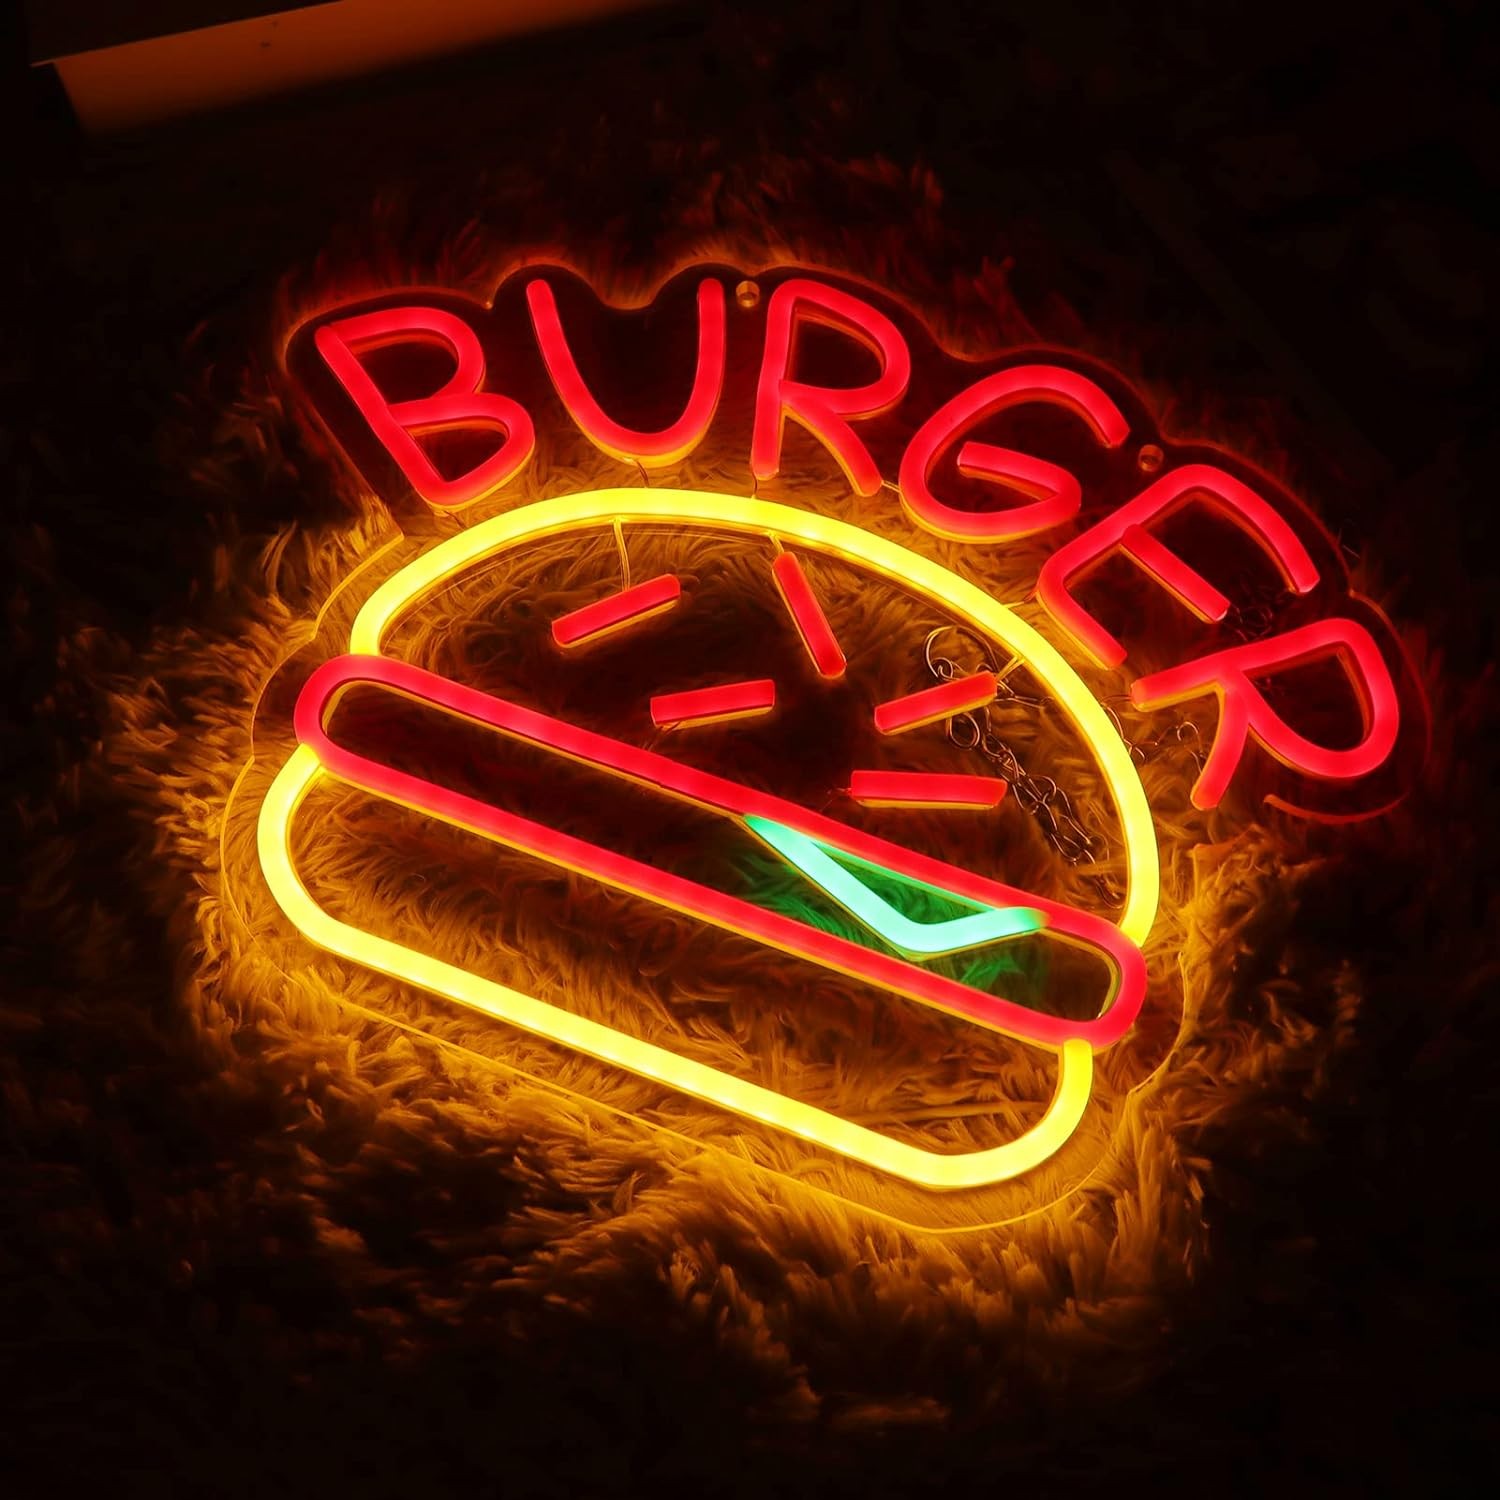 Burger Reklamní svítící LED neonová reklama hamburger